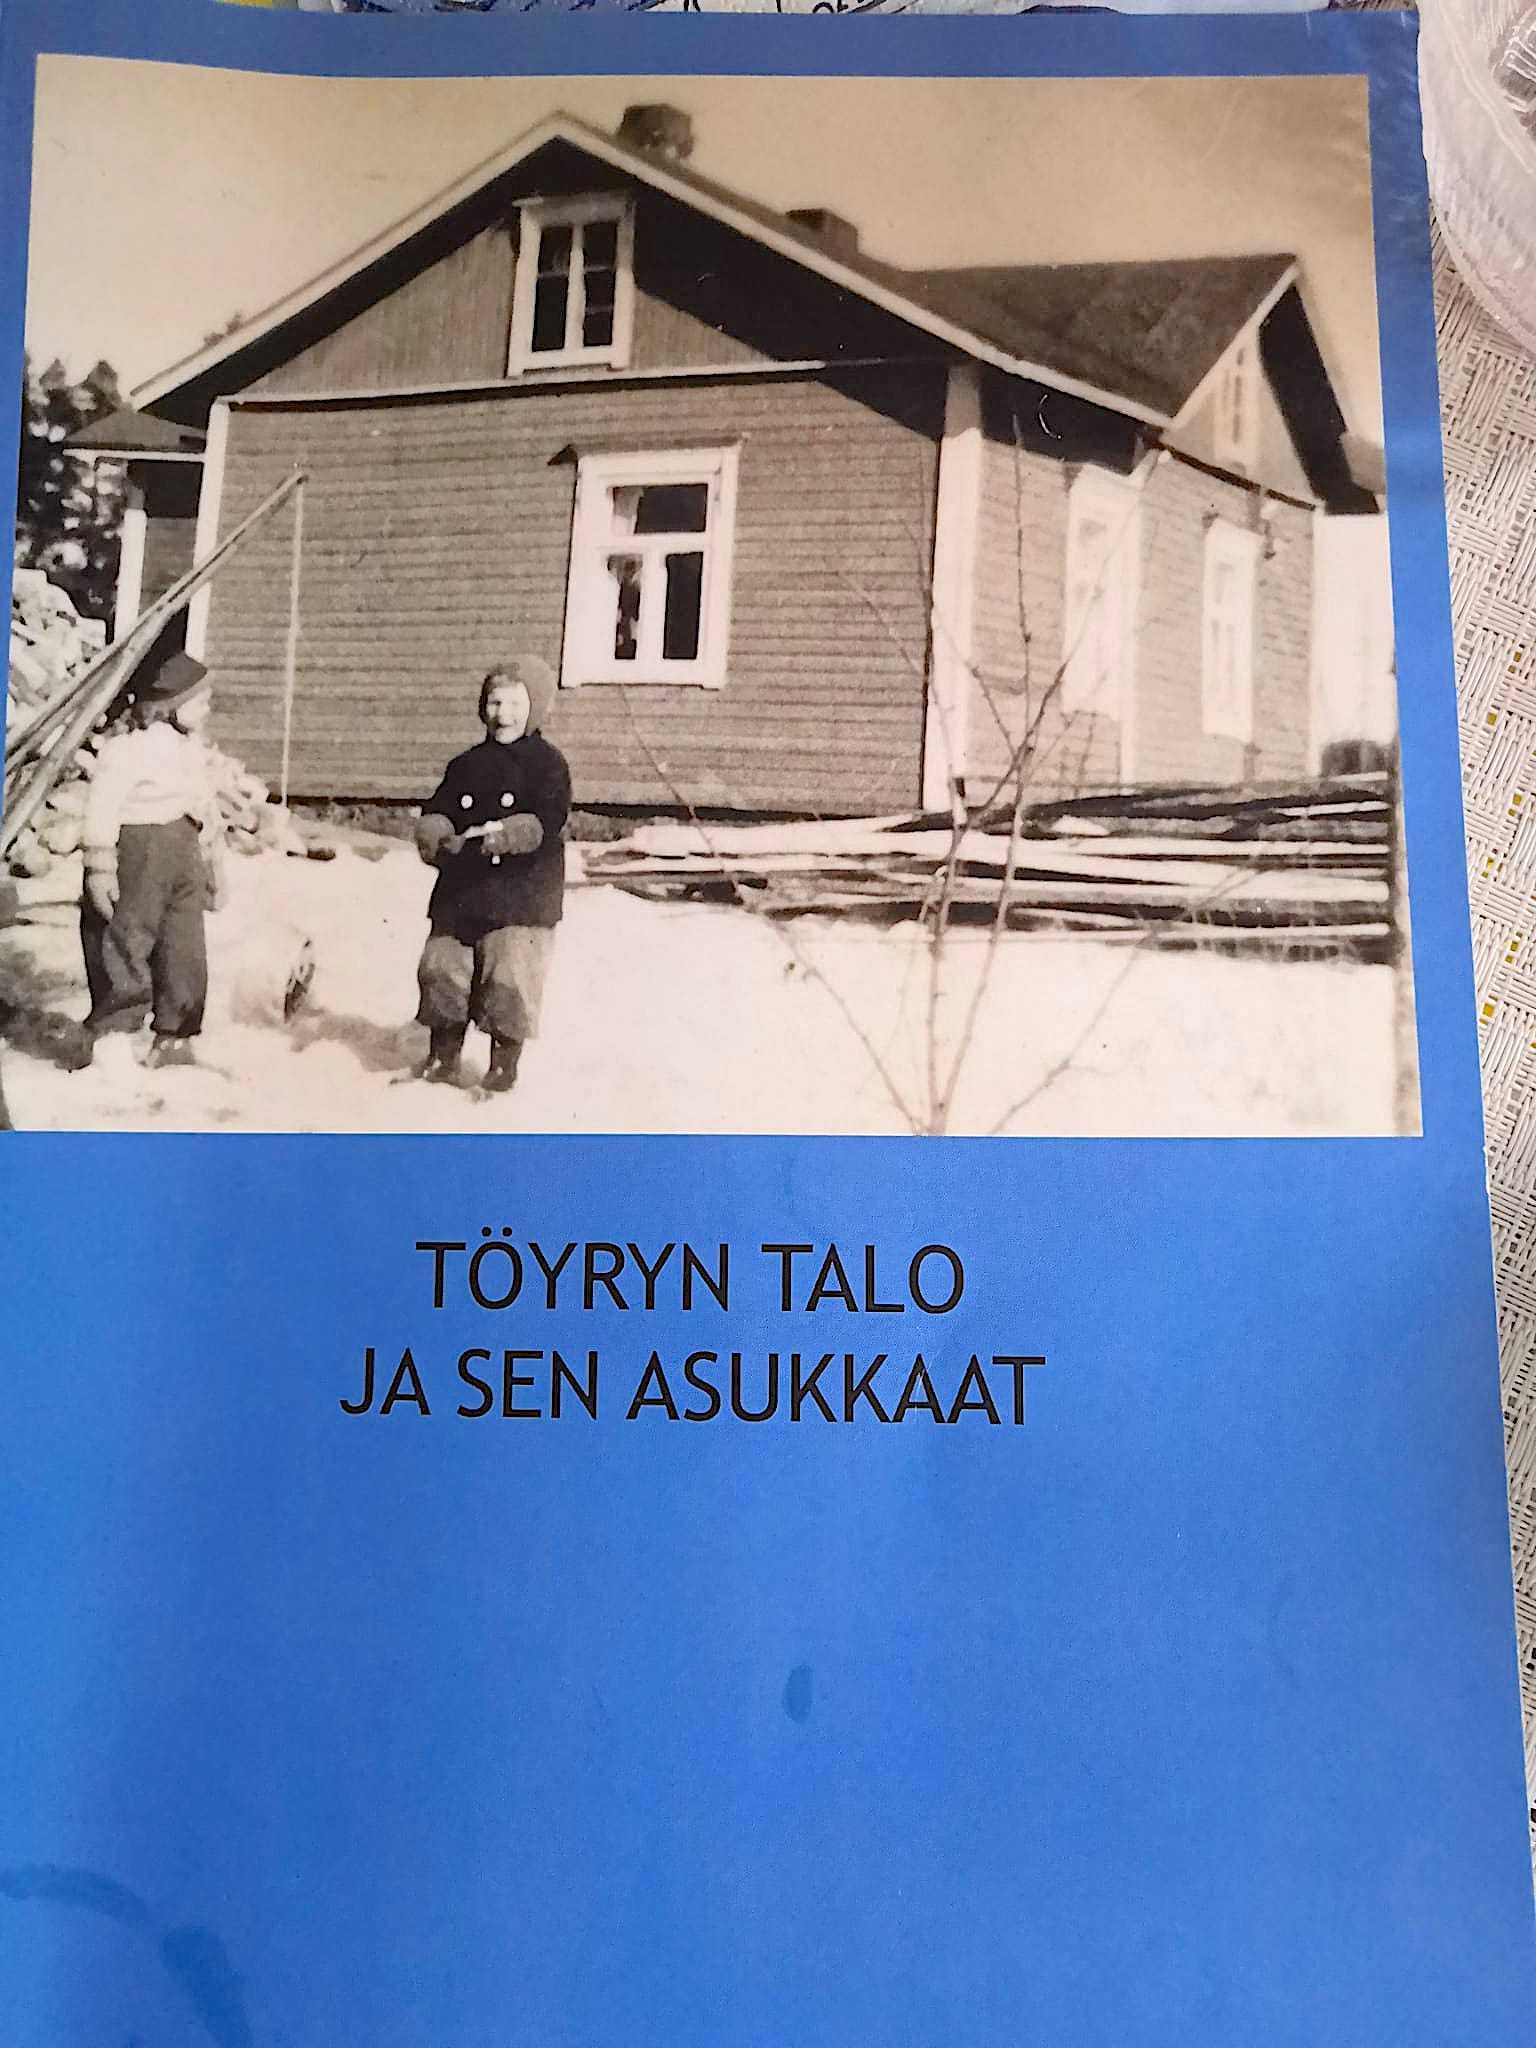 Syyskuun alussa julkaistu omakustannekirja kertoo Töyryn talosta ja sen asukkaista.